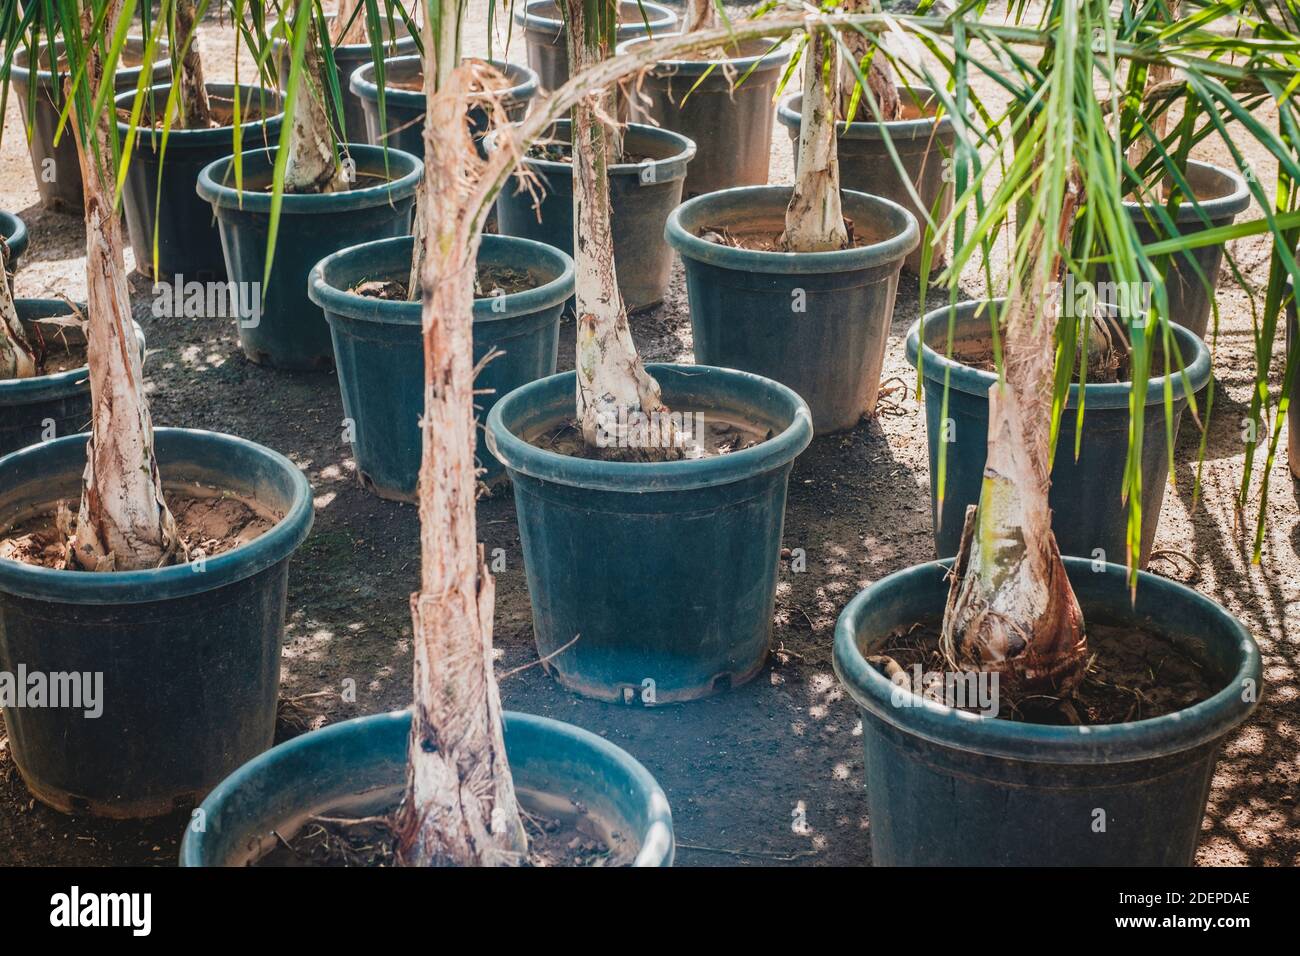 Palmen in Töpfen in Baumschule oder Gartenladen - Stockfoto